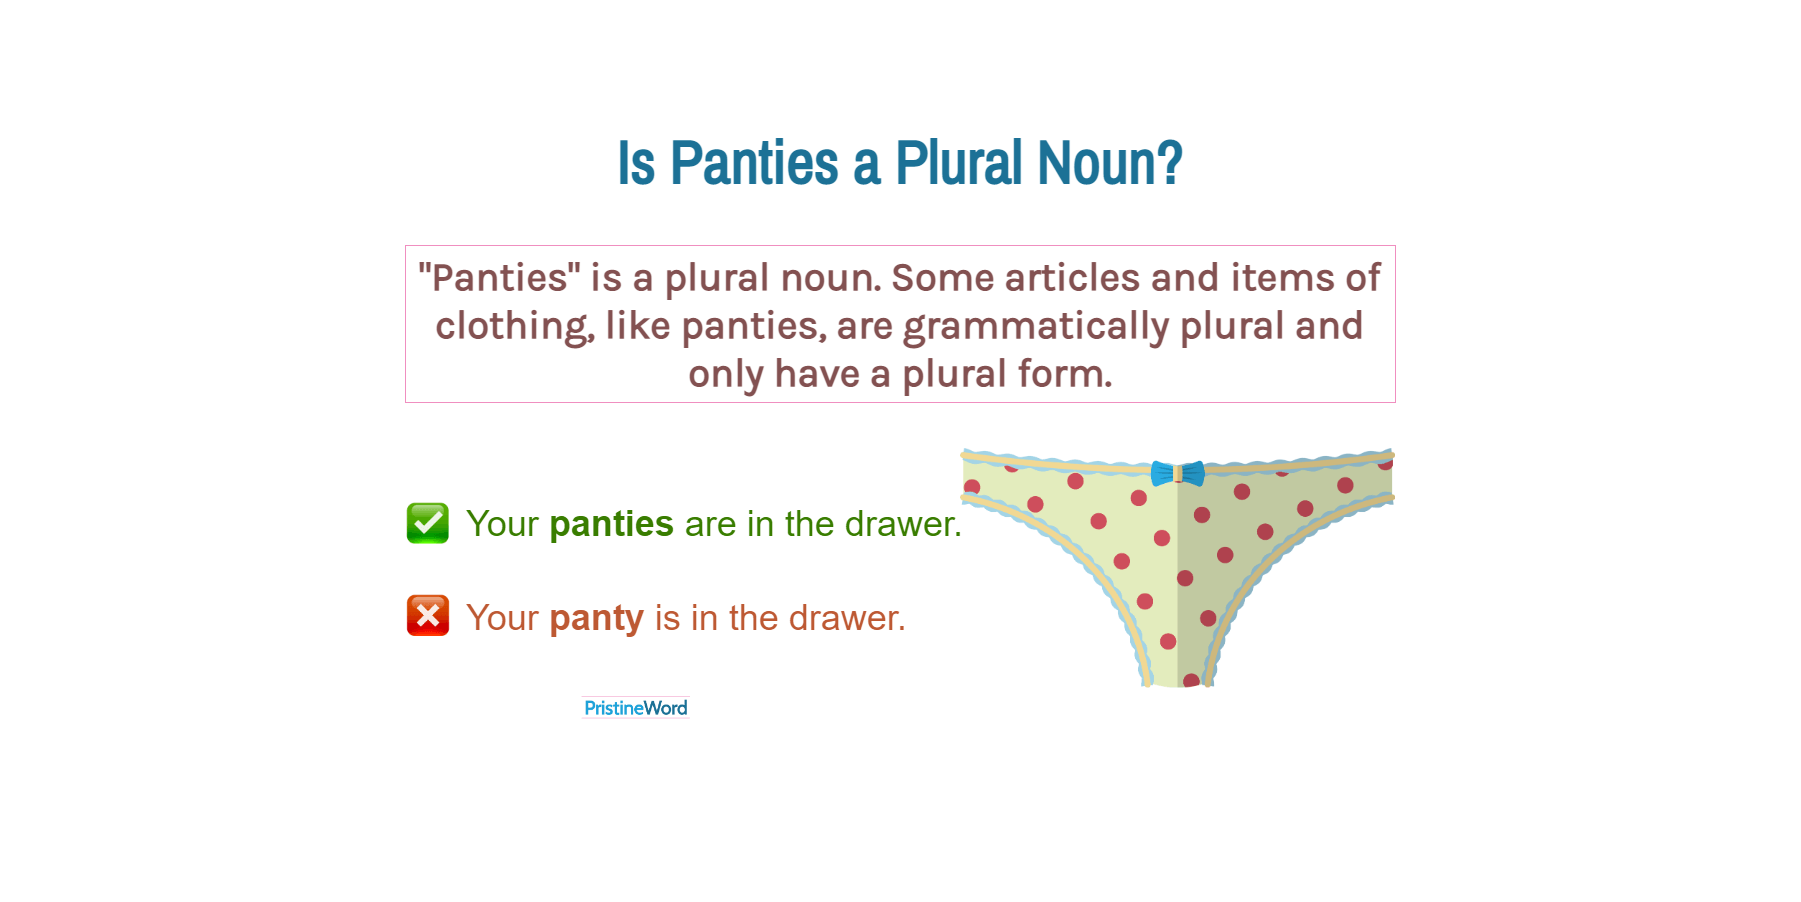 Is Panties a Plural Noun?